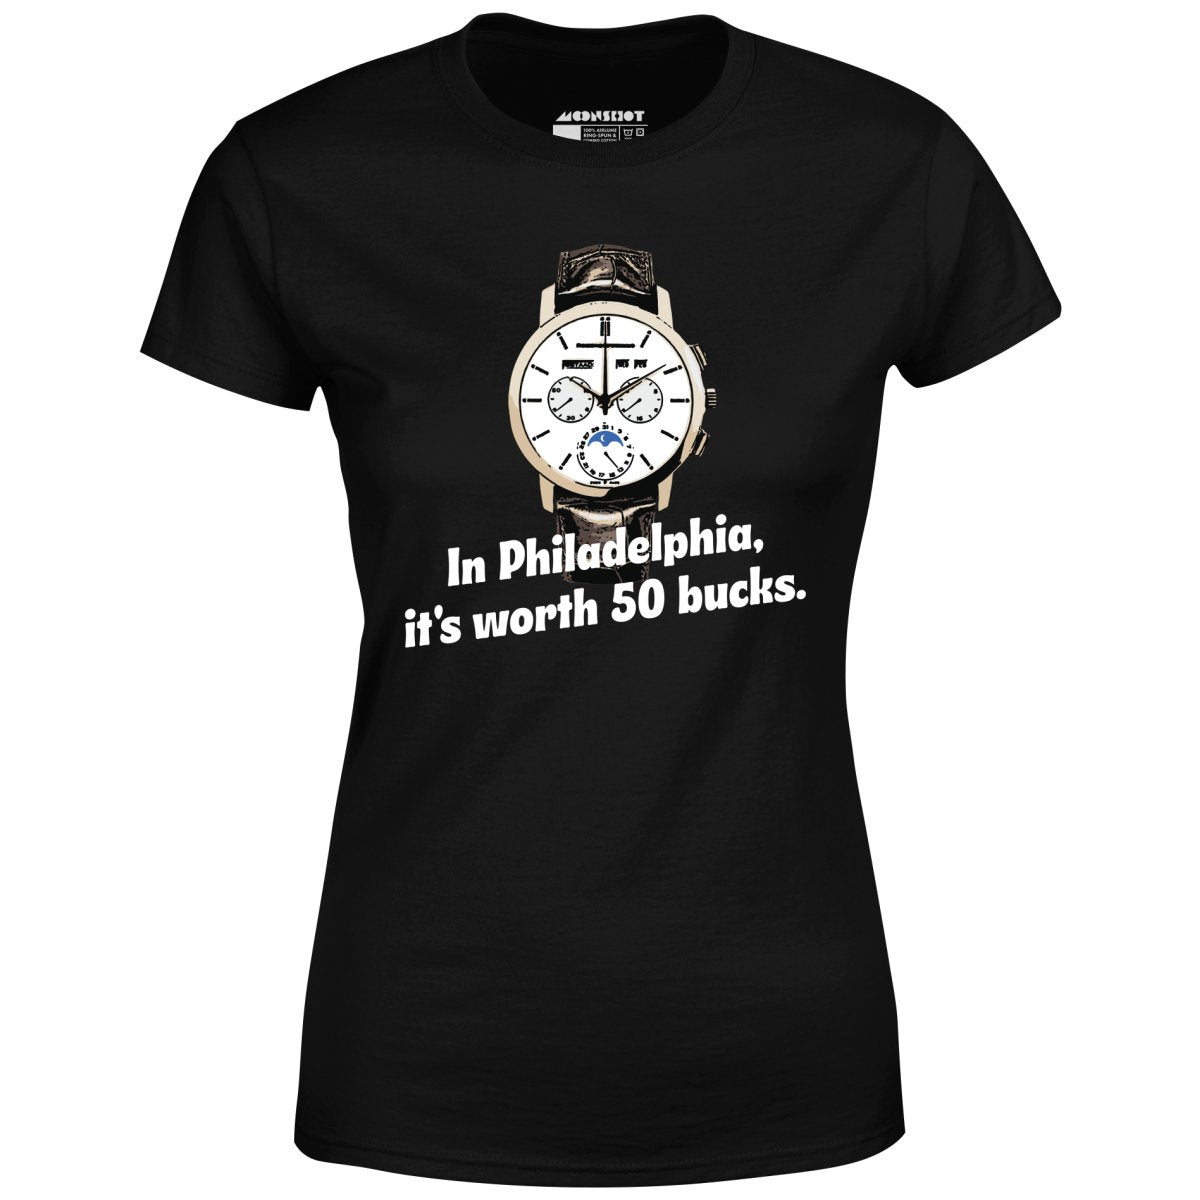 In Philadelphia It's Worth 50 Bucks - Women's T-Shirt